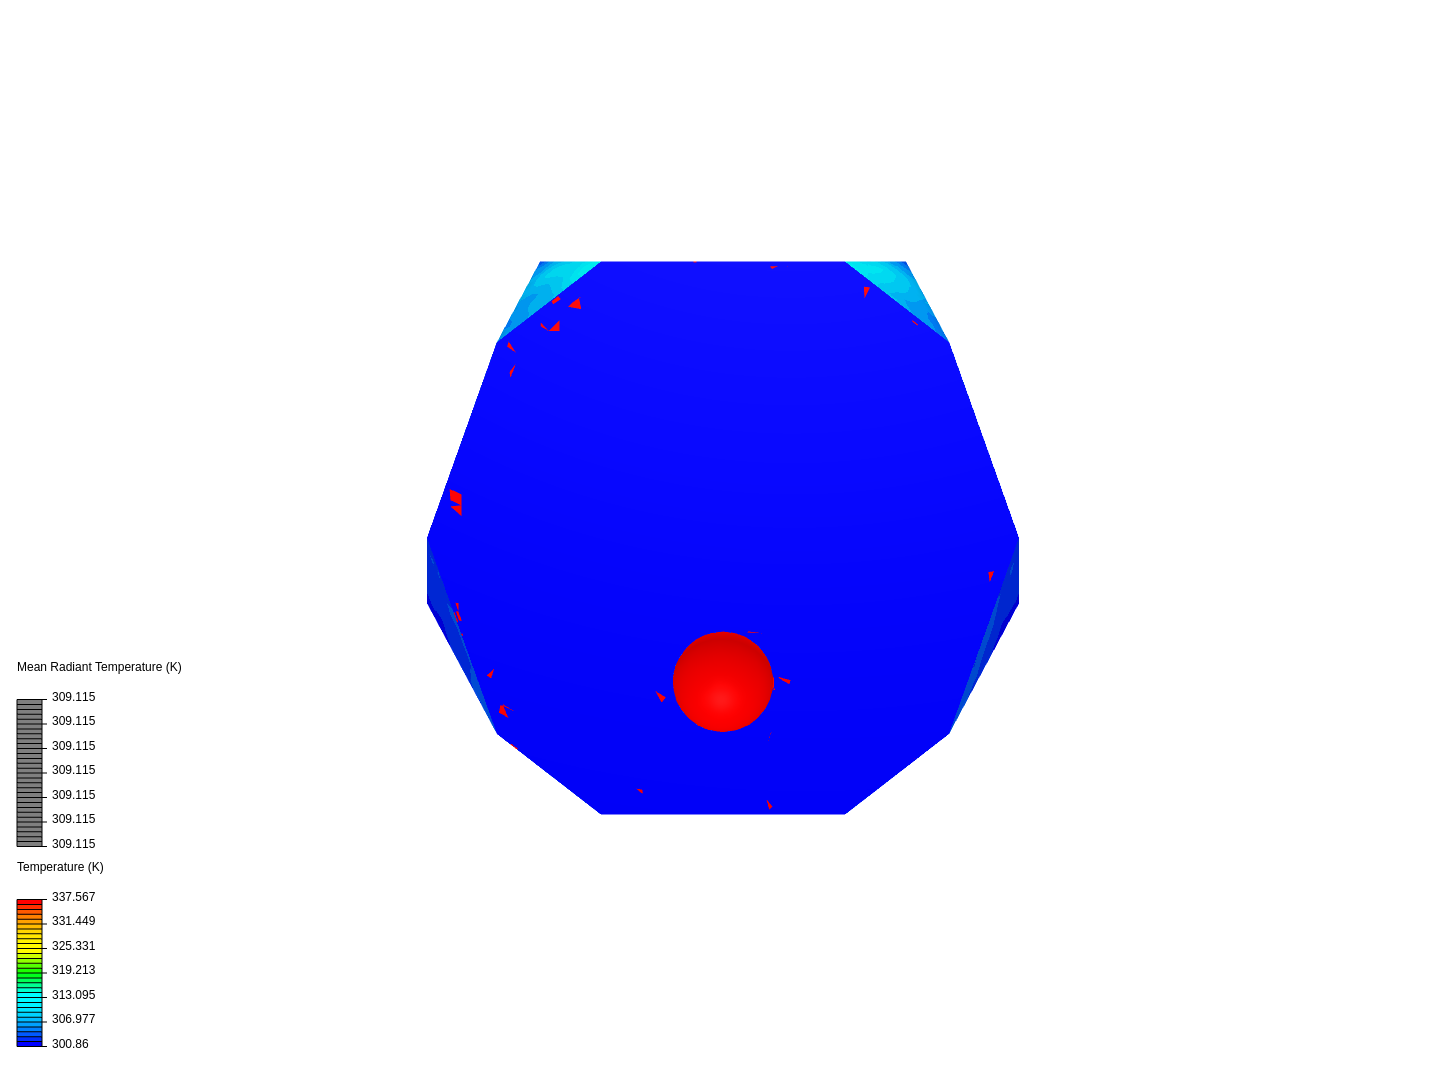 Icosahedron image